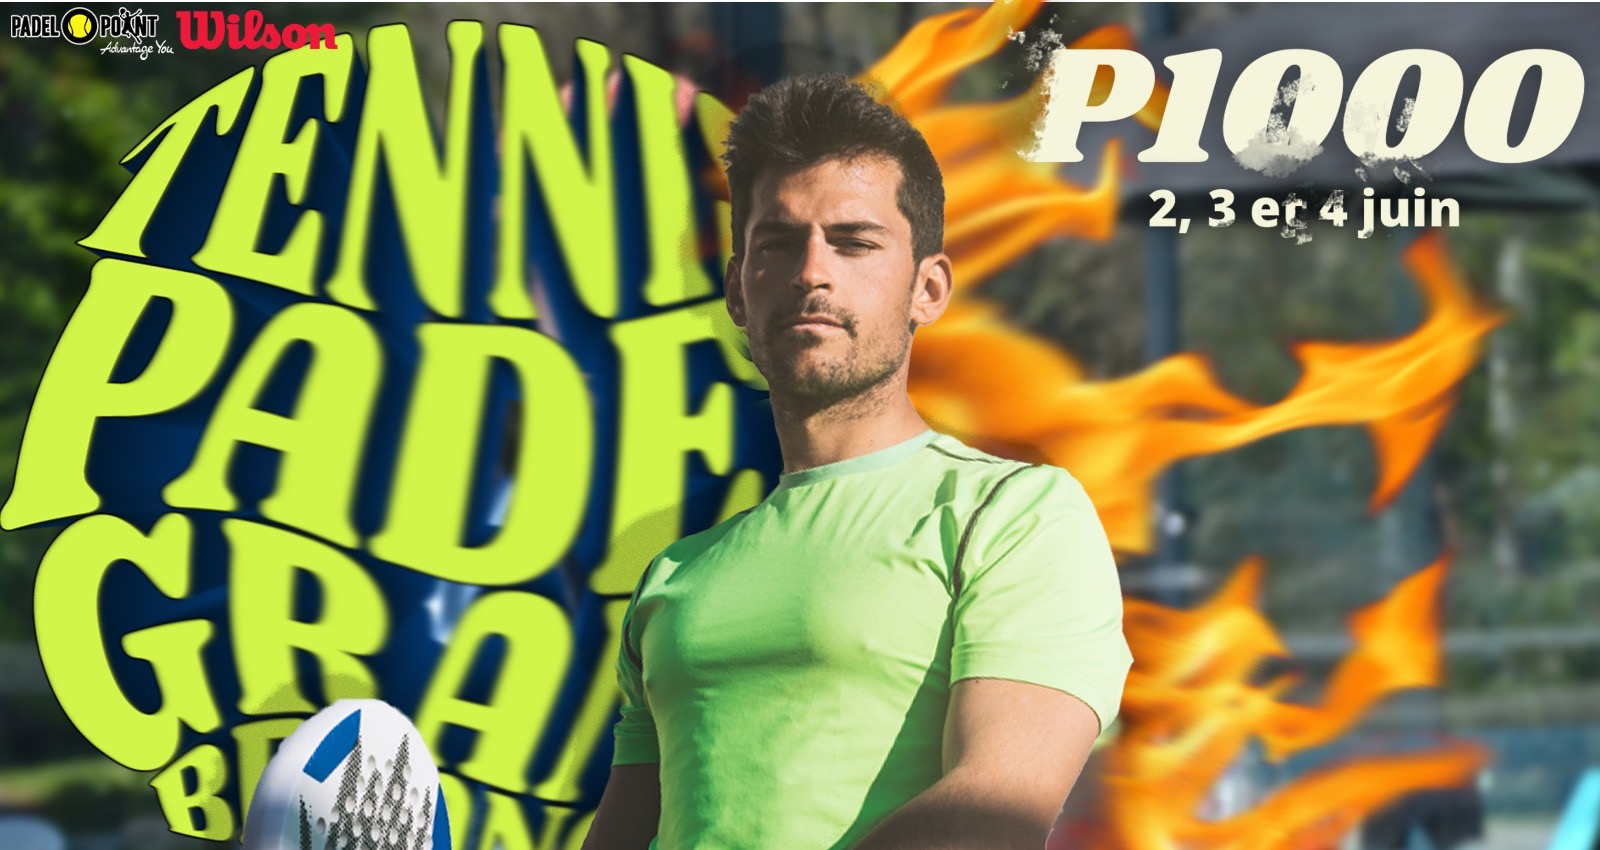 En P1000 i tennis Padel Grand Besançon från 2 till 4 juni